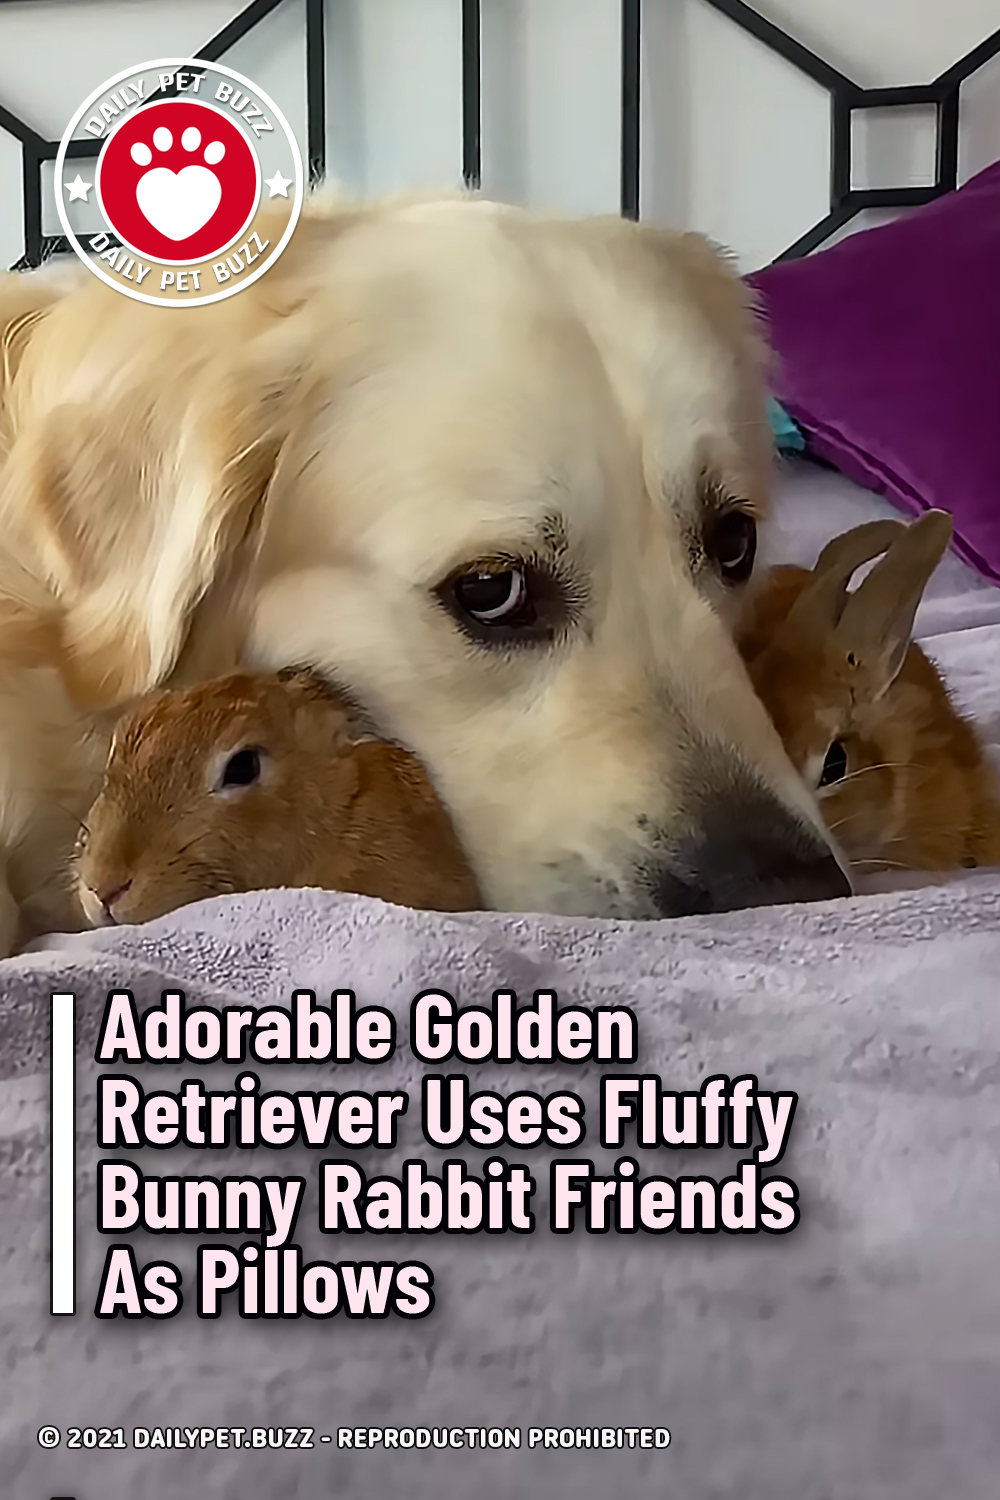 Adorable Golden Retriever Uses Fluffy Bunny Rabbit Friends As Pillows